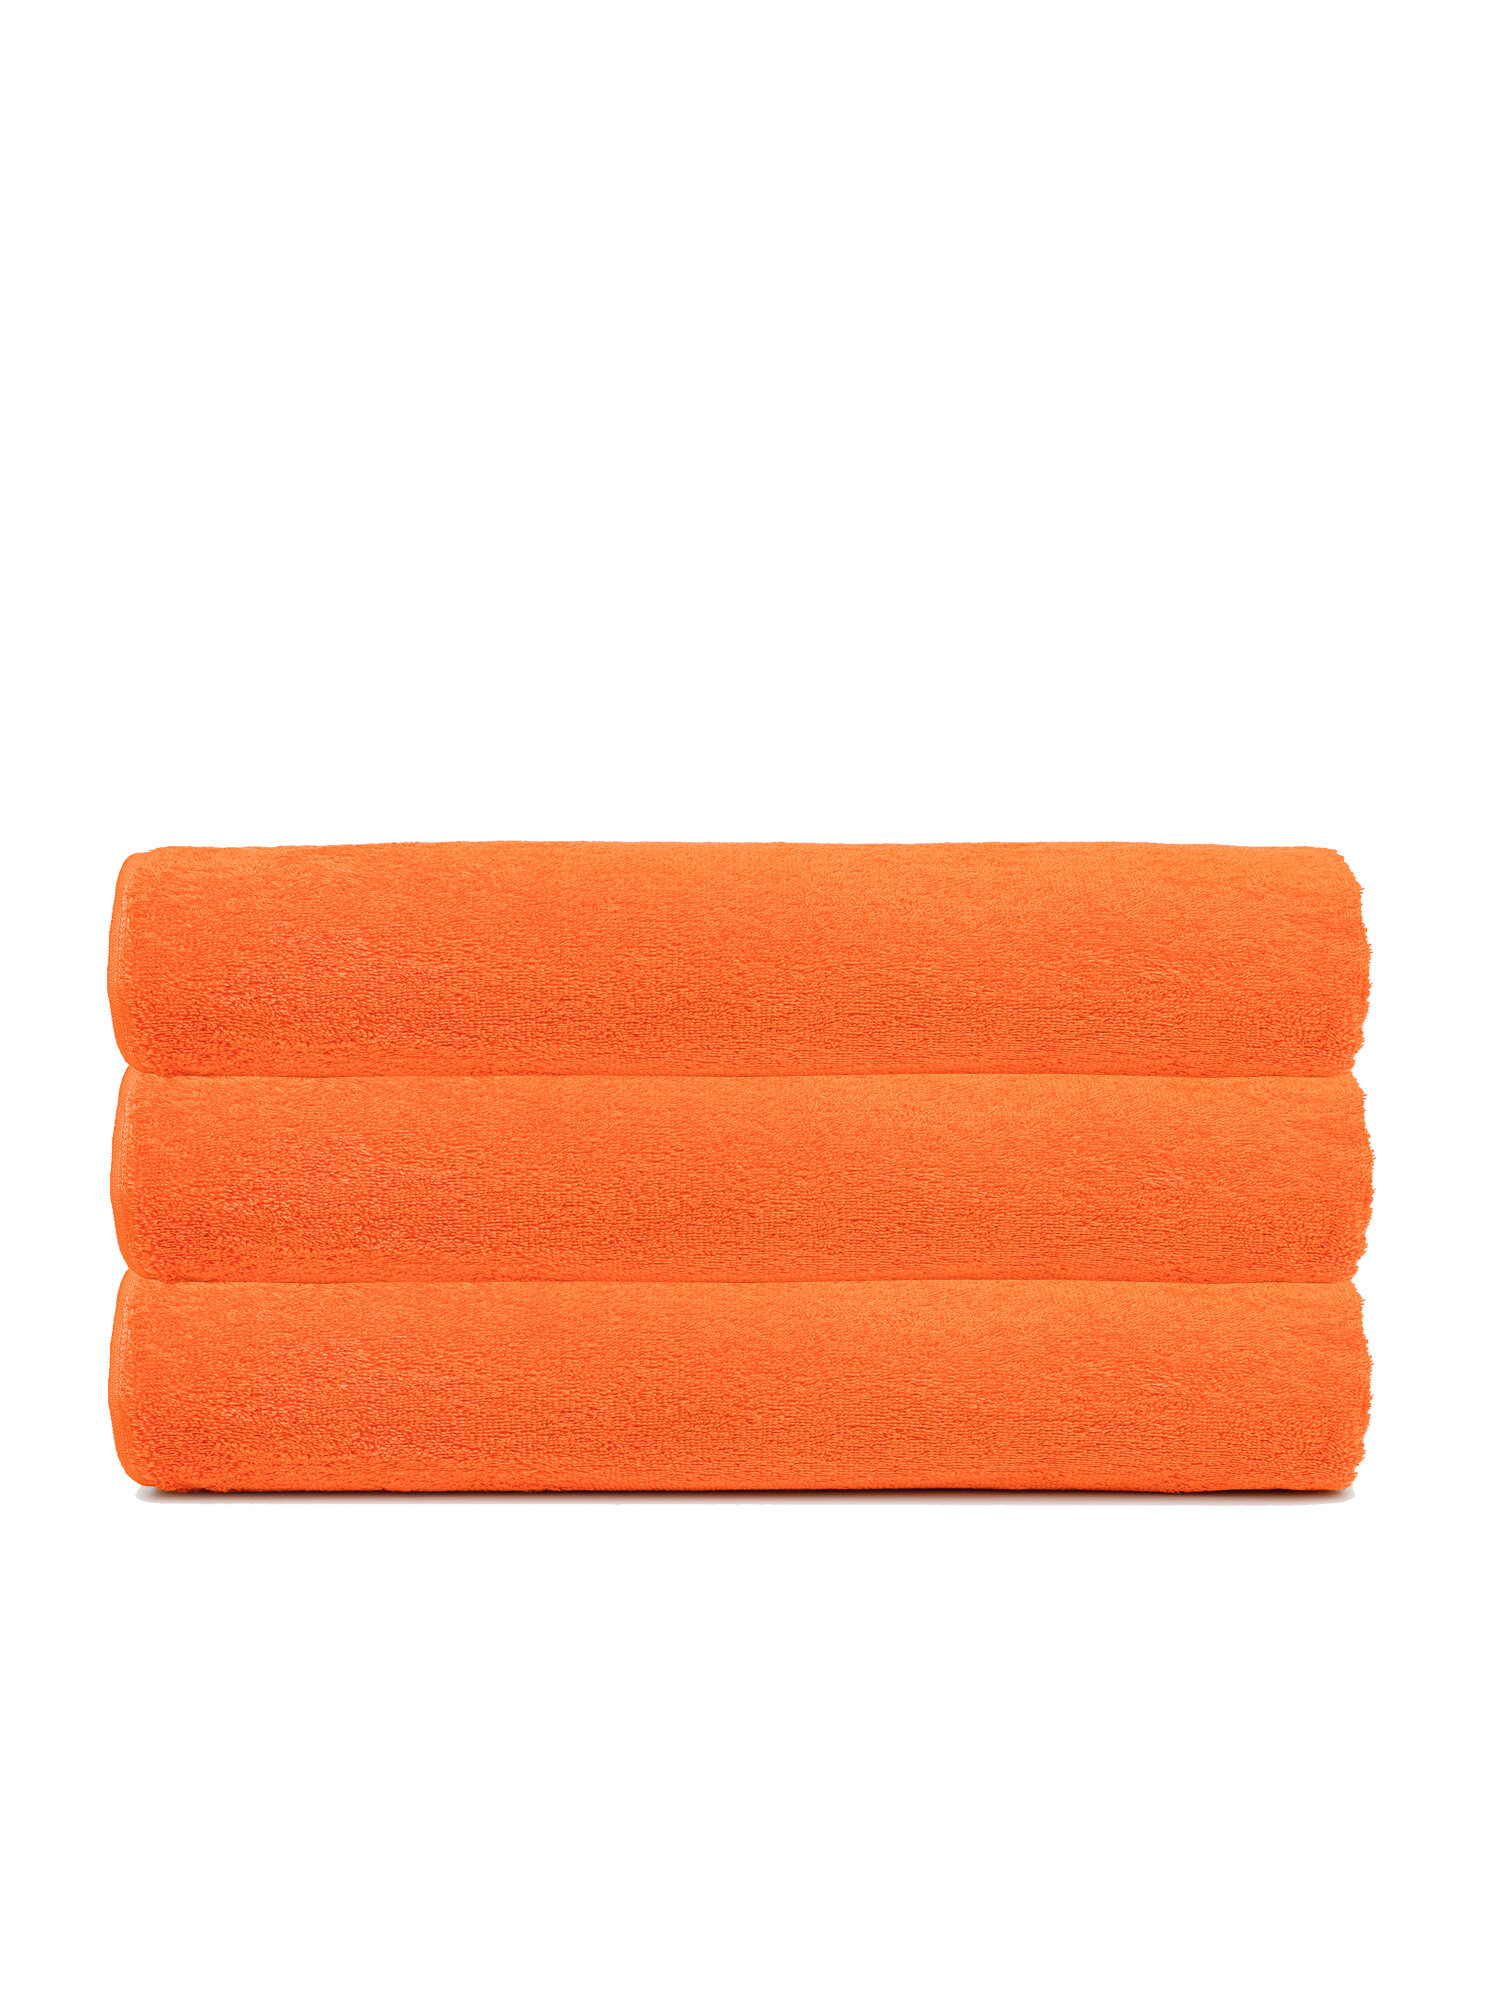 Набор полотенец 70х140 махровые банные TCStyle оранжевого цвета 3 шт. 470 гр/м2